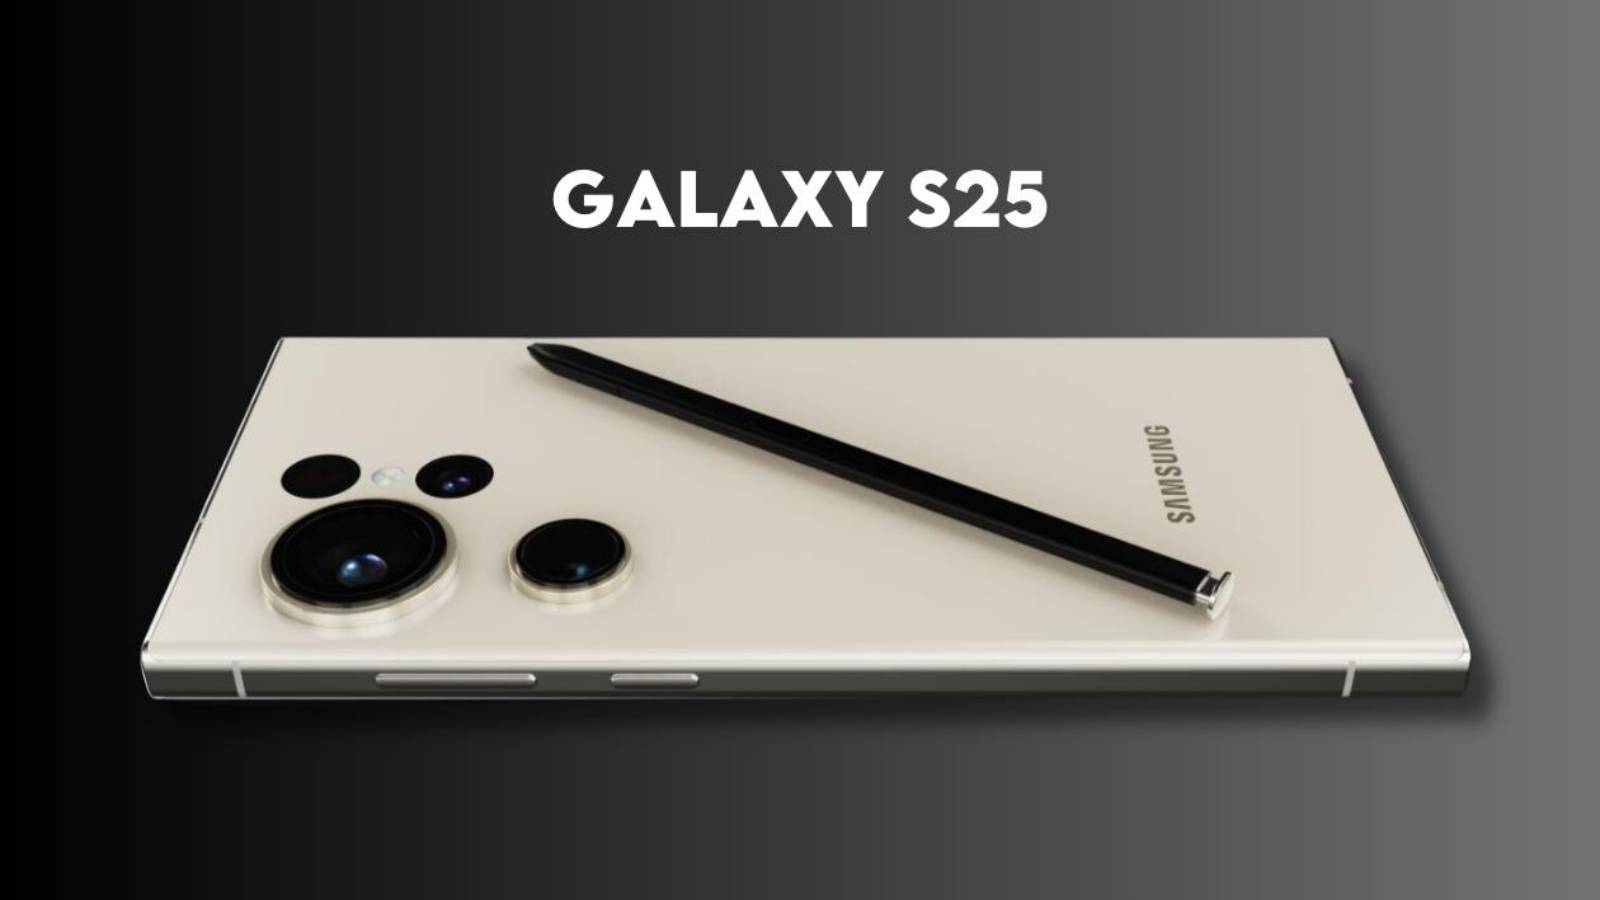 Samsung GALAXY S25 Les premières images révèlent le nouveau téléphone SHOW